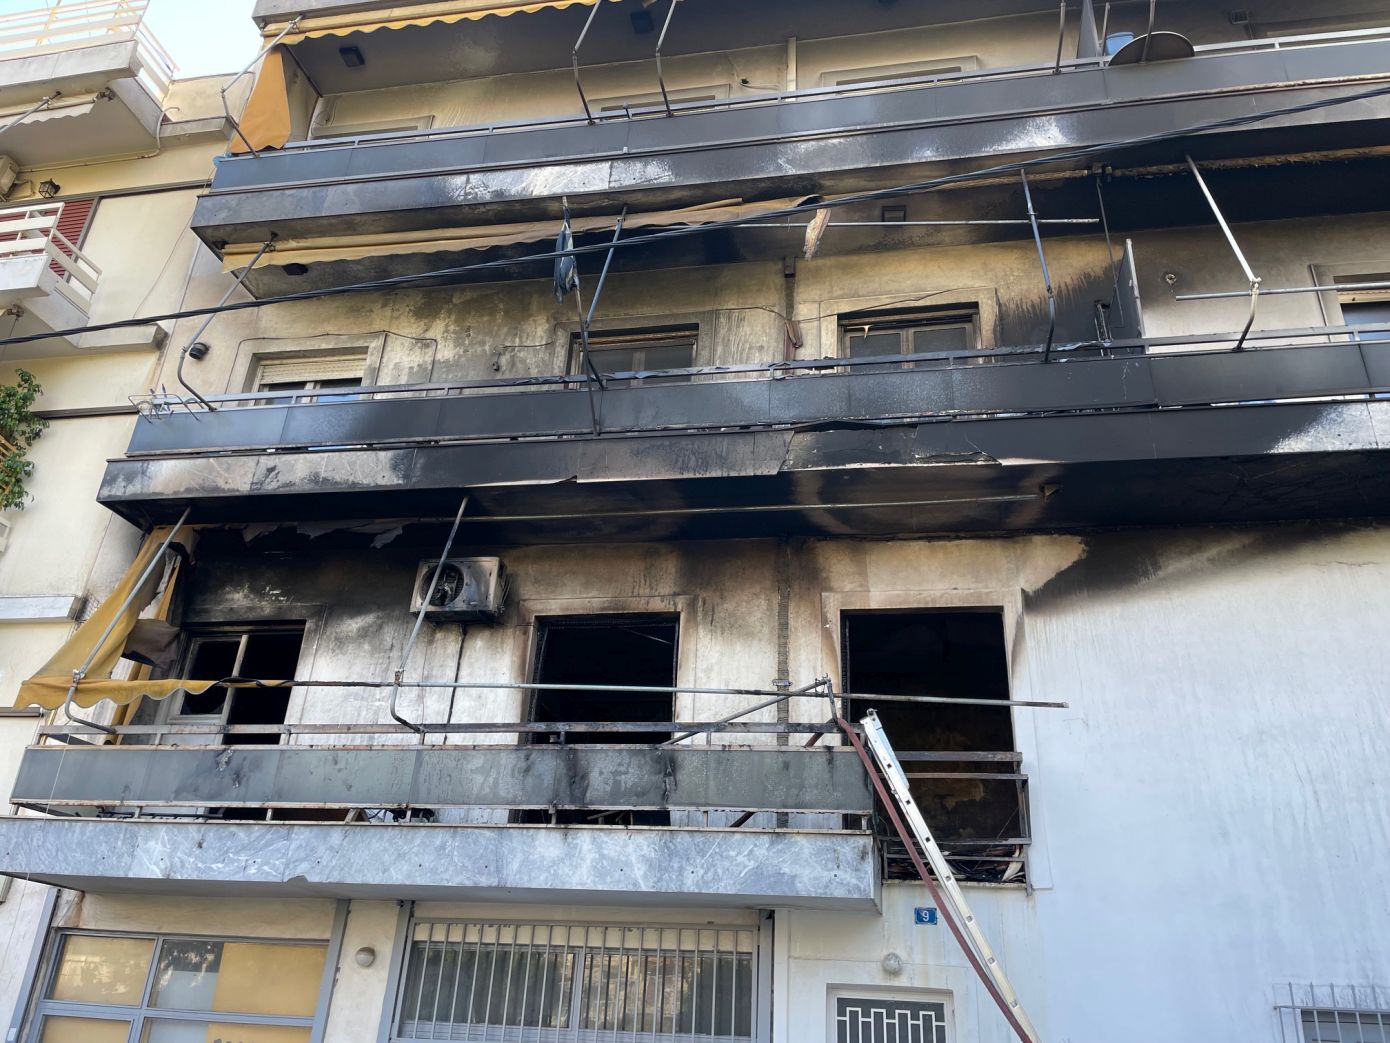 Φωτιά σε διαμέρισα στη Ριζούπολη Αττικής – Απεγκλωβίστηκαν έξι ένοικοι της πολυκατοικίας, τρεις προληπτικά στο νοσοκομείο